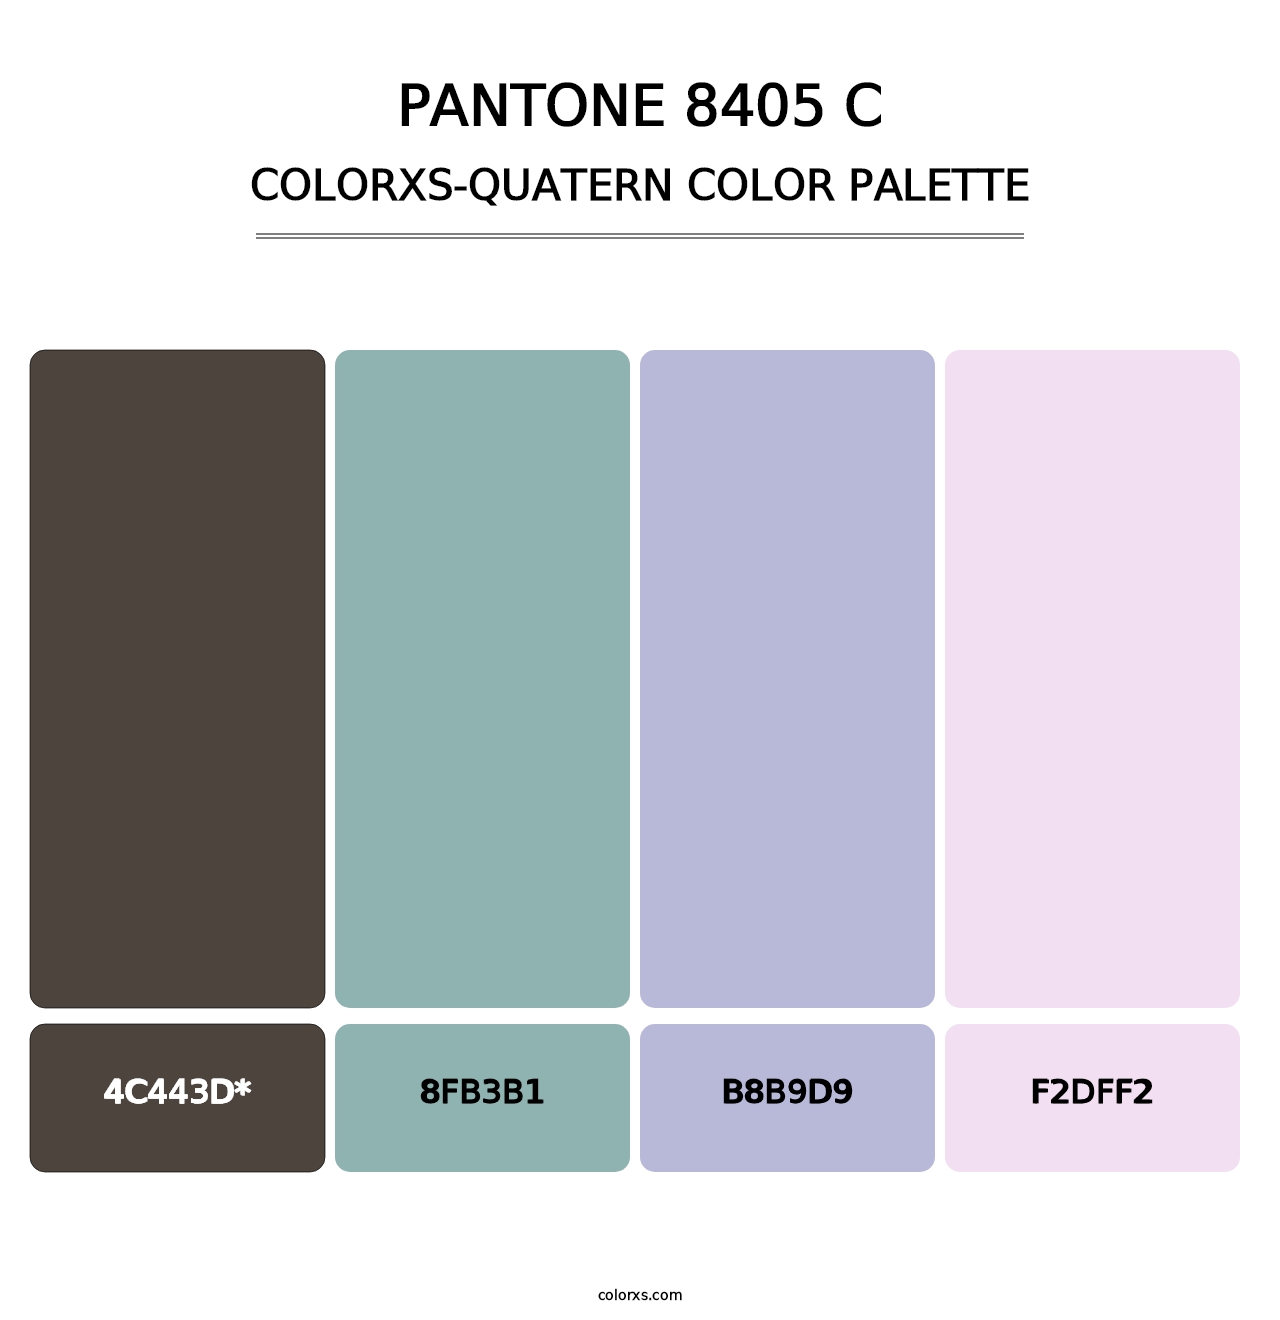 PANTONE 8405 C - Colorxs Quatern Palette